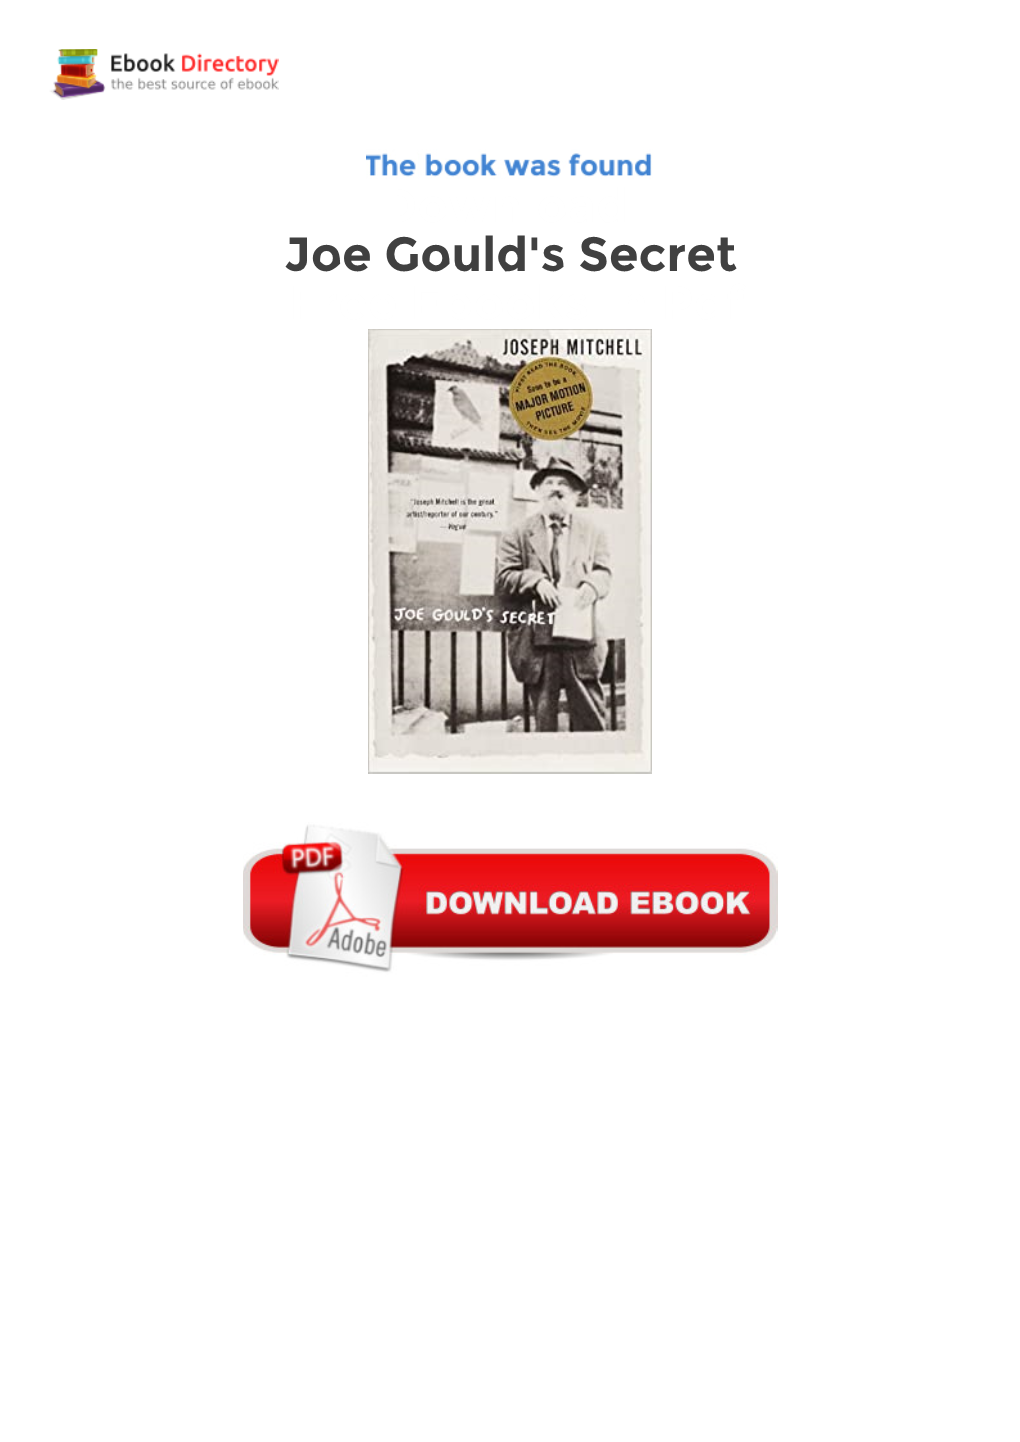 Download Joe Gould's Secret Free Ebooks In